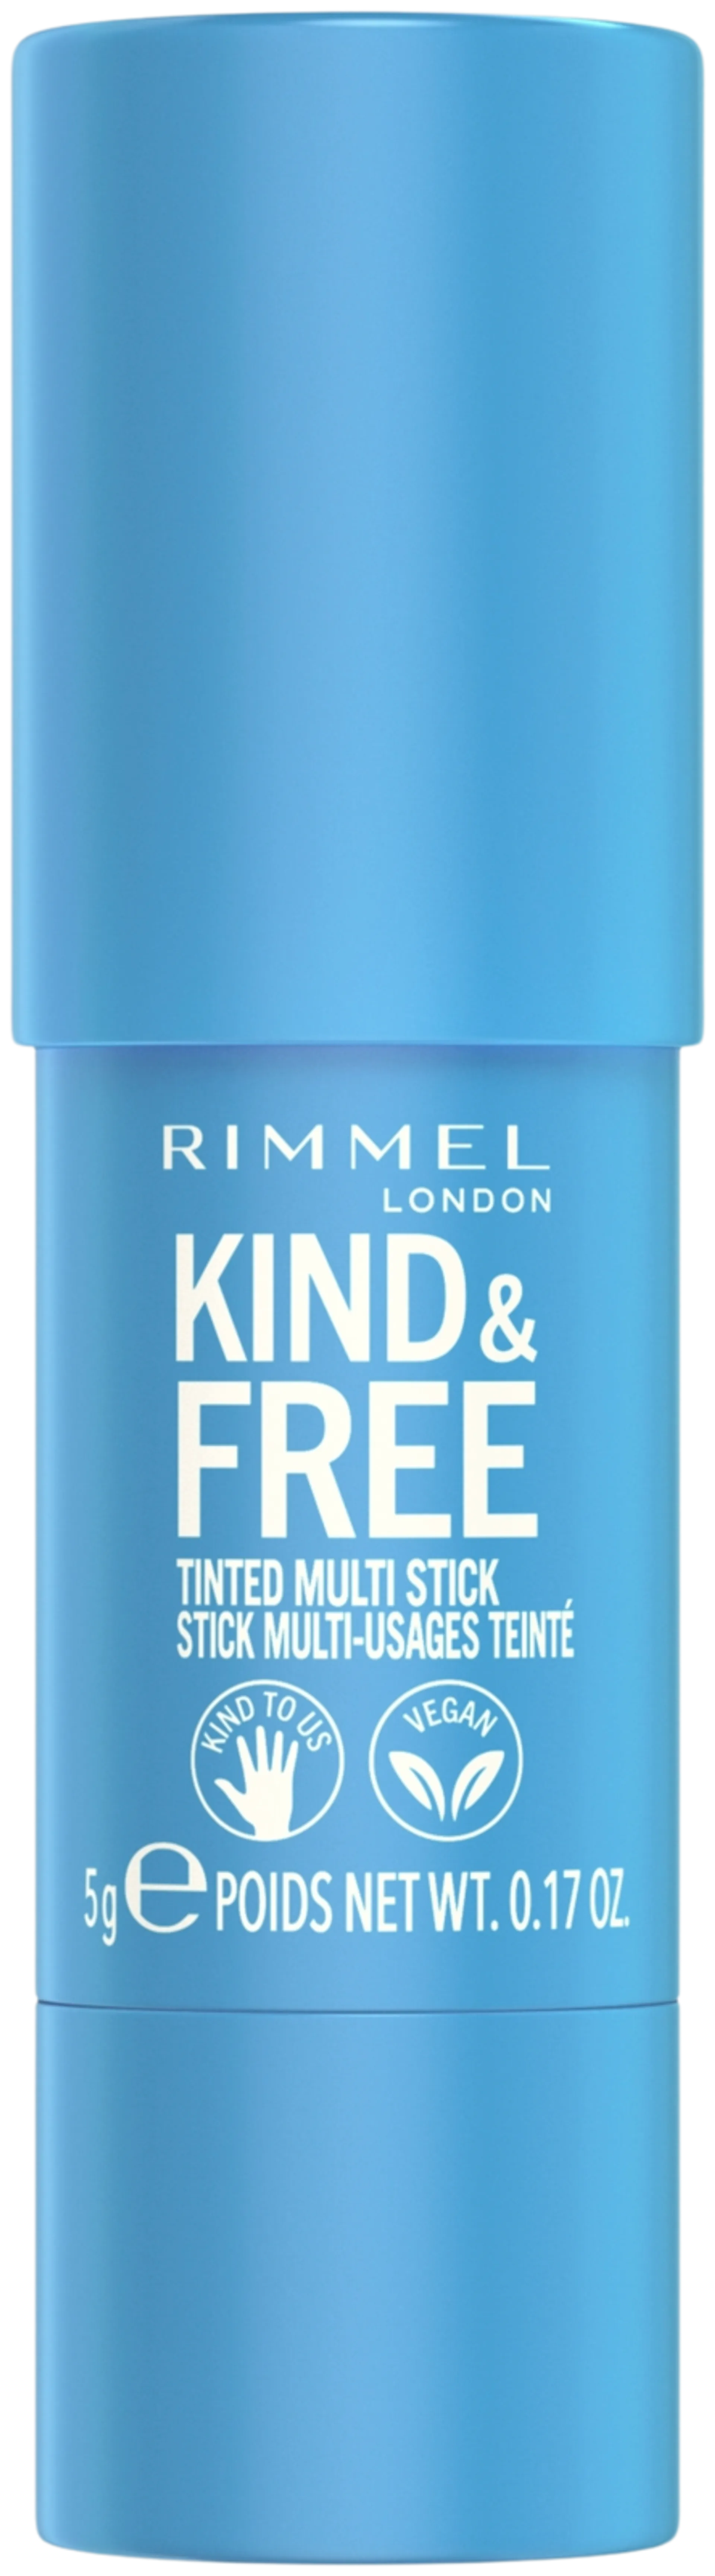 Rimmel Kind & Free Multi Stick 5 g 001 Caramel Dusk poskipuna - Caramel Dusk